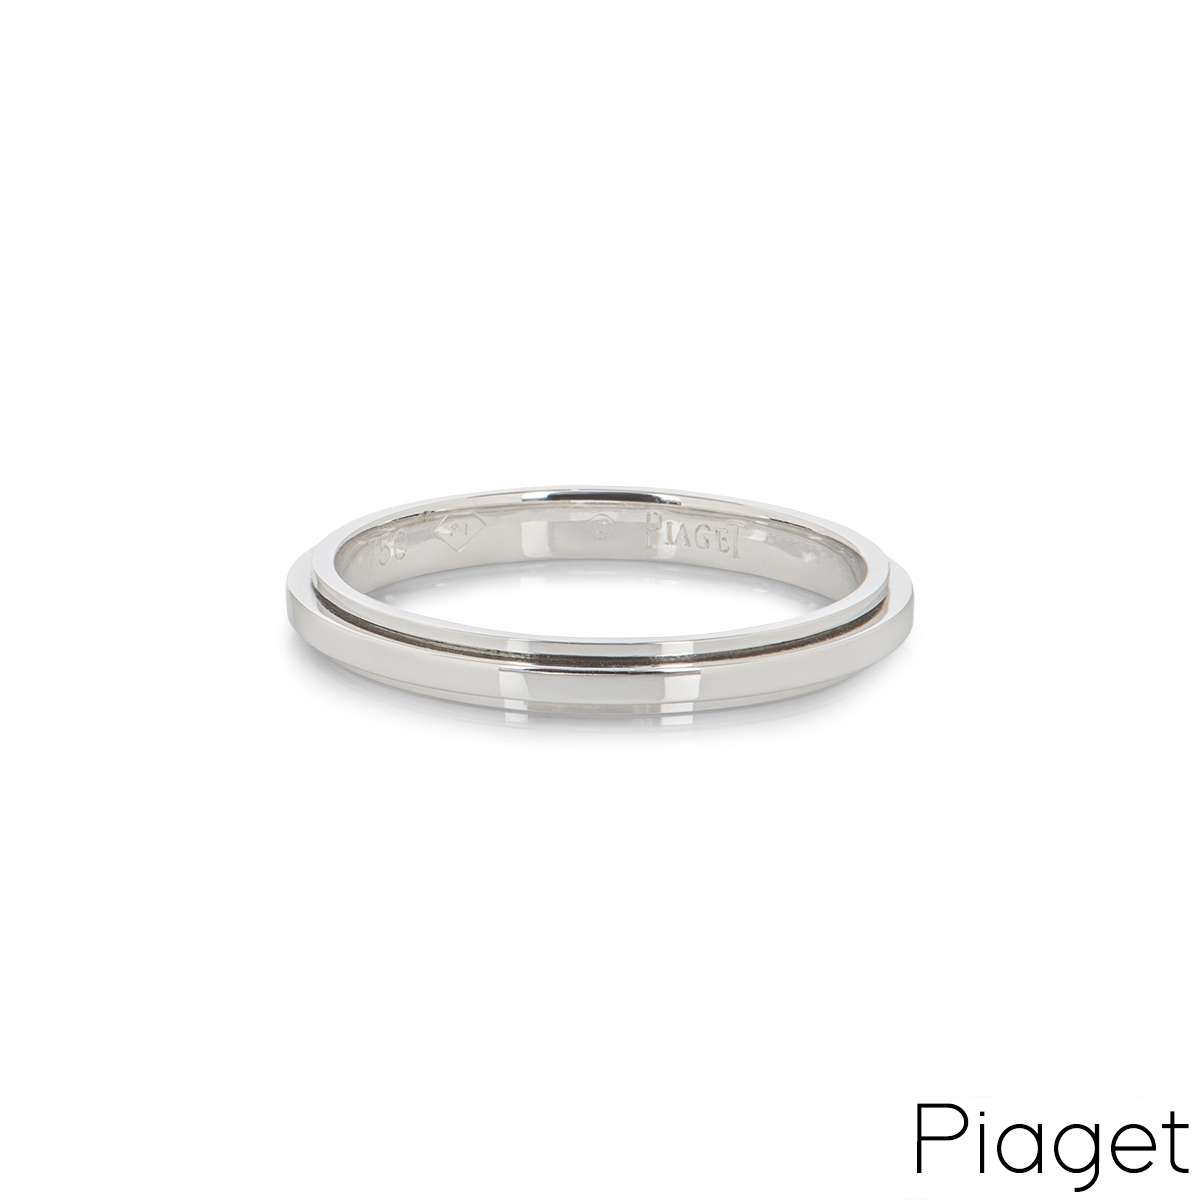 Piaget White Gold Possession Ring G34PR300